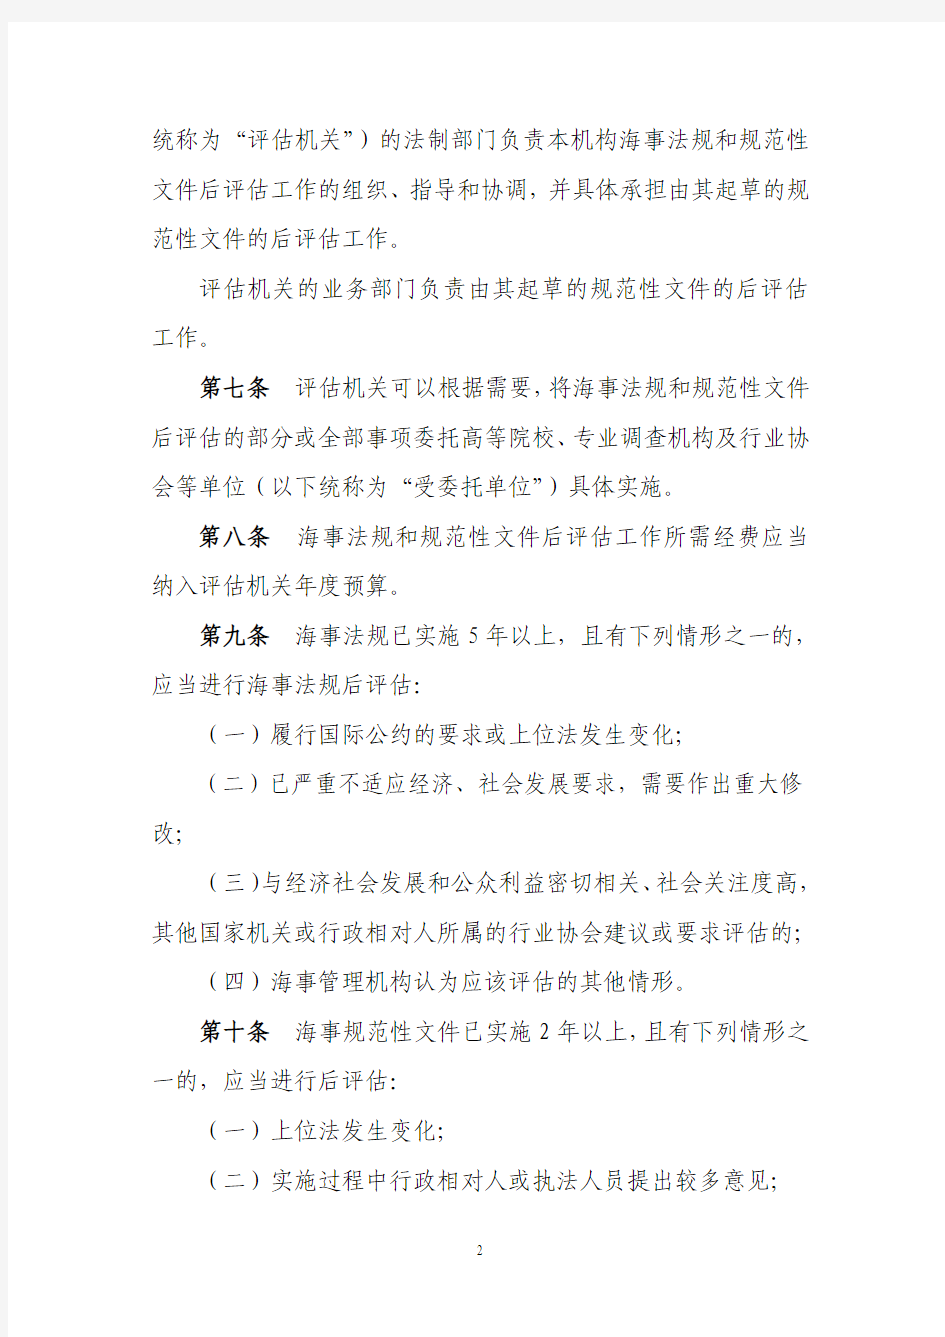 中华人民共和国海事局海事法规和规范性文件后评估办法